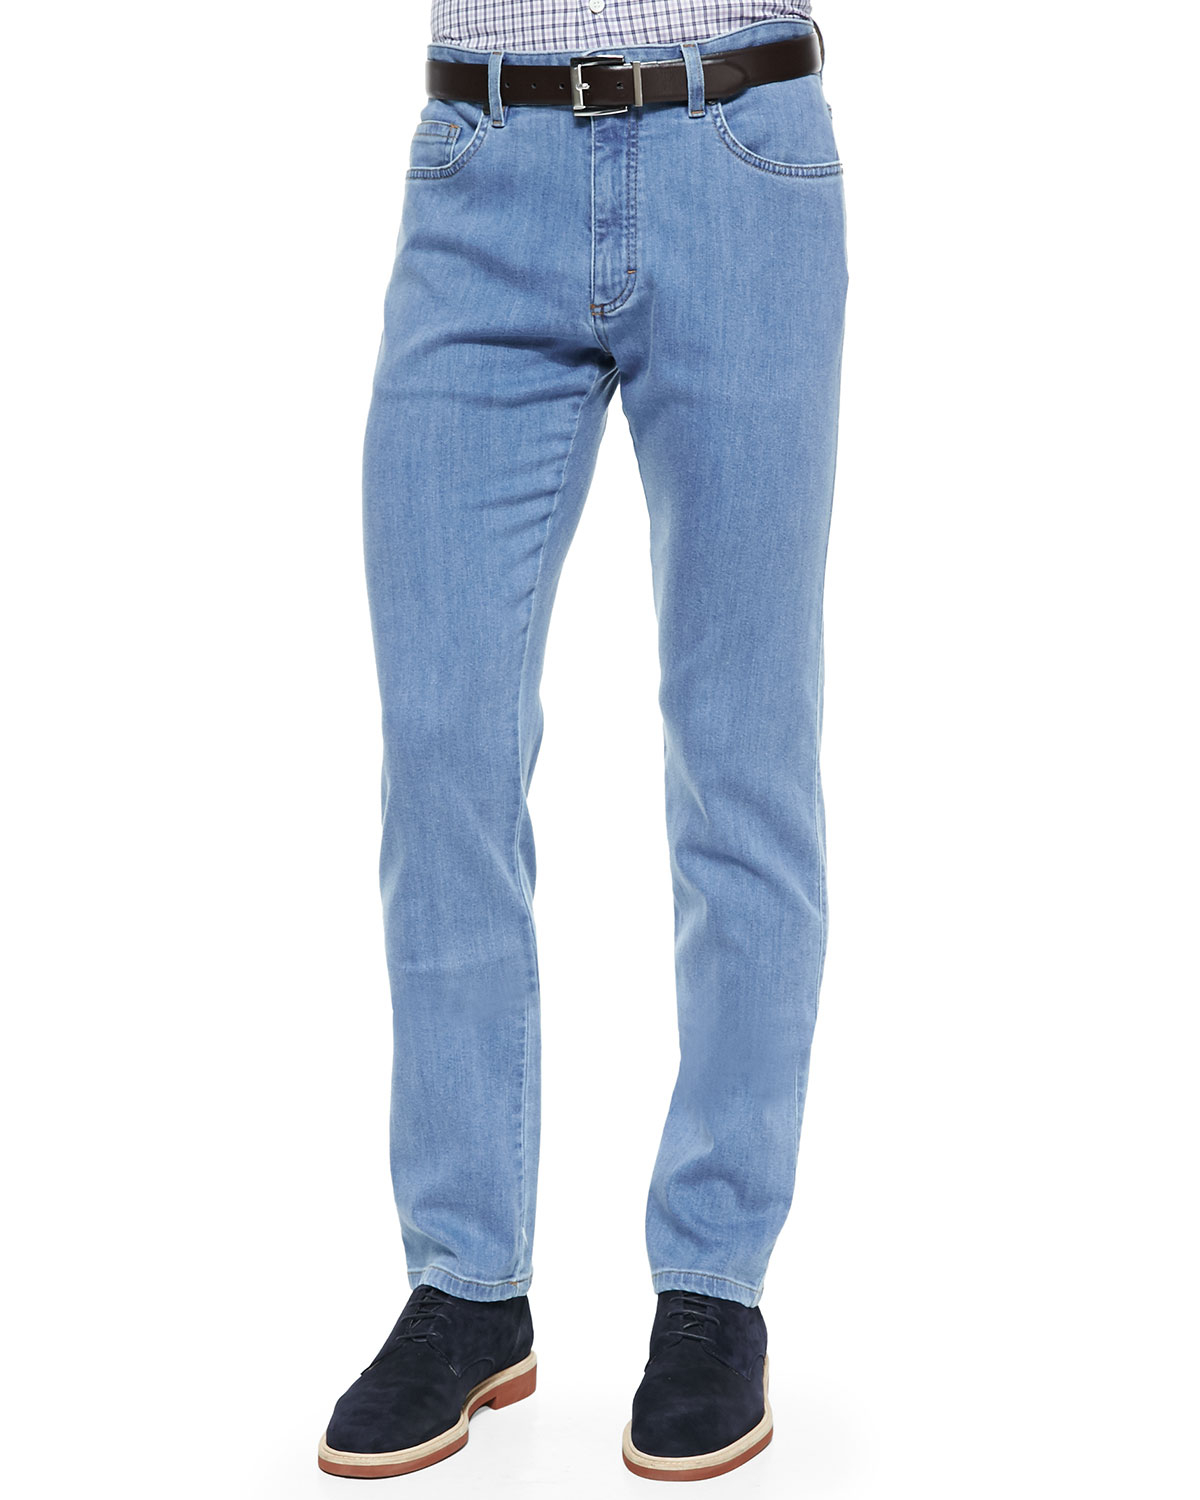 Lyst - Ermenegildo Zegna Pbj Stretch-denim Jeans in Blue for Men